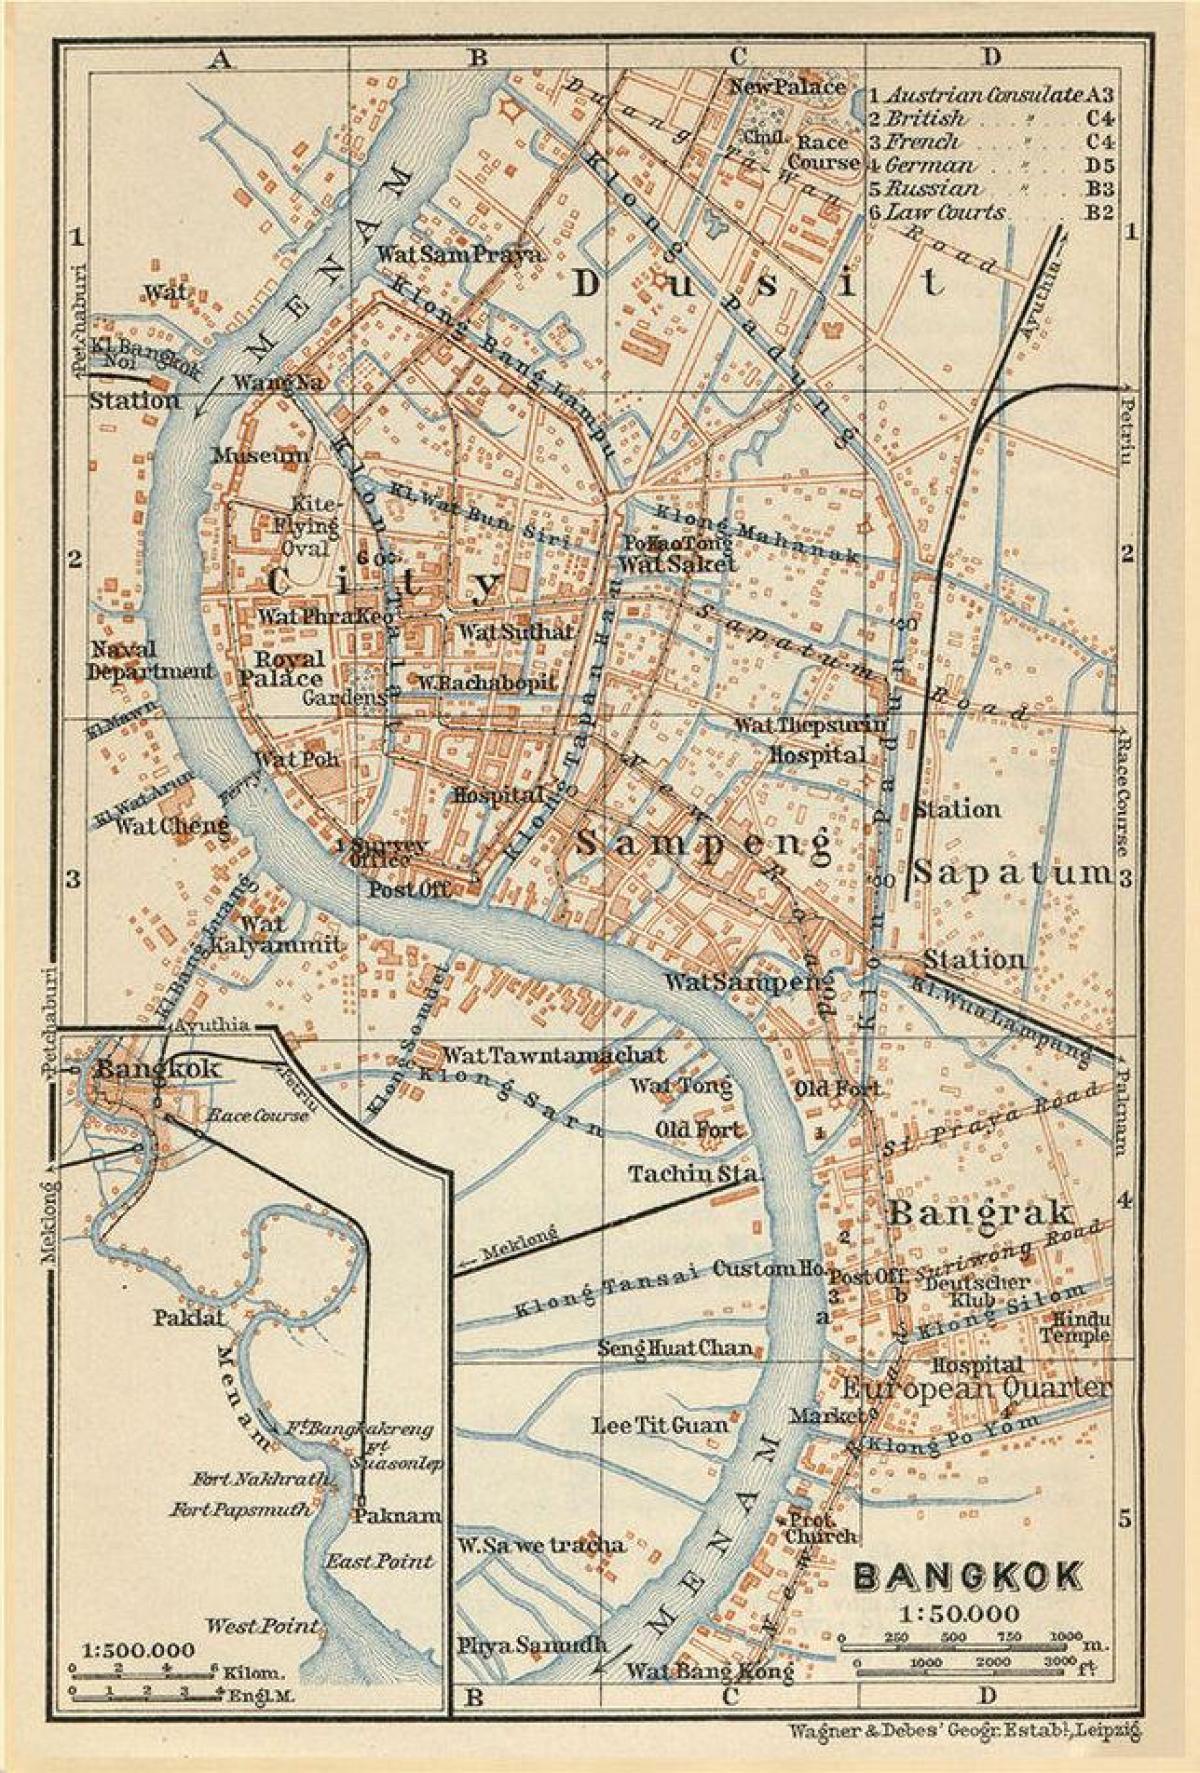 Bangkok (Krung Thep) mapa antiguo